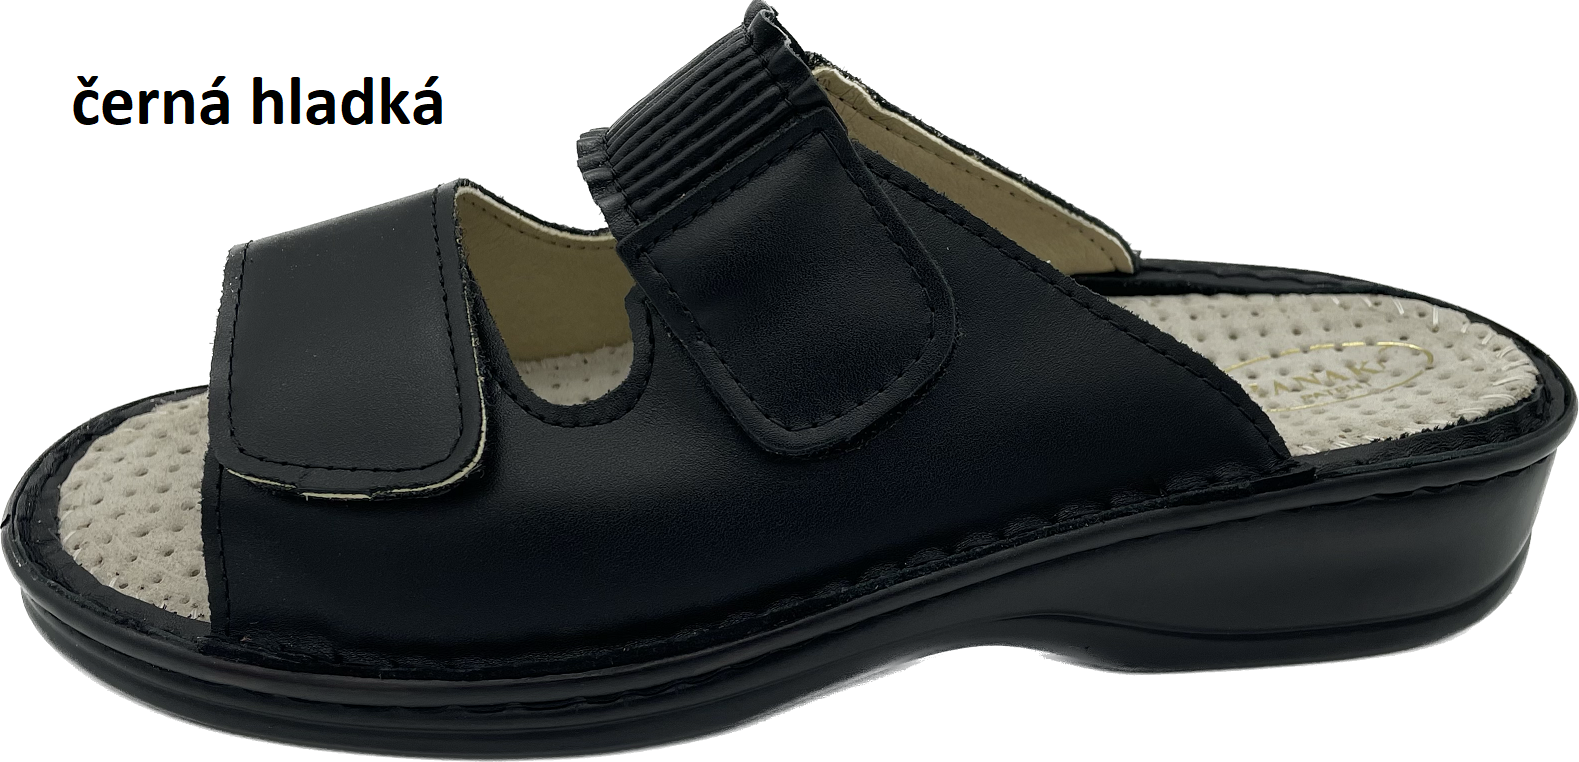 Boty Hanák vzor 304 - černá podešev Barva usně: černá hladká, Velikosti obuvi: 39